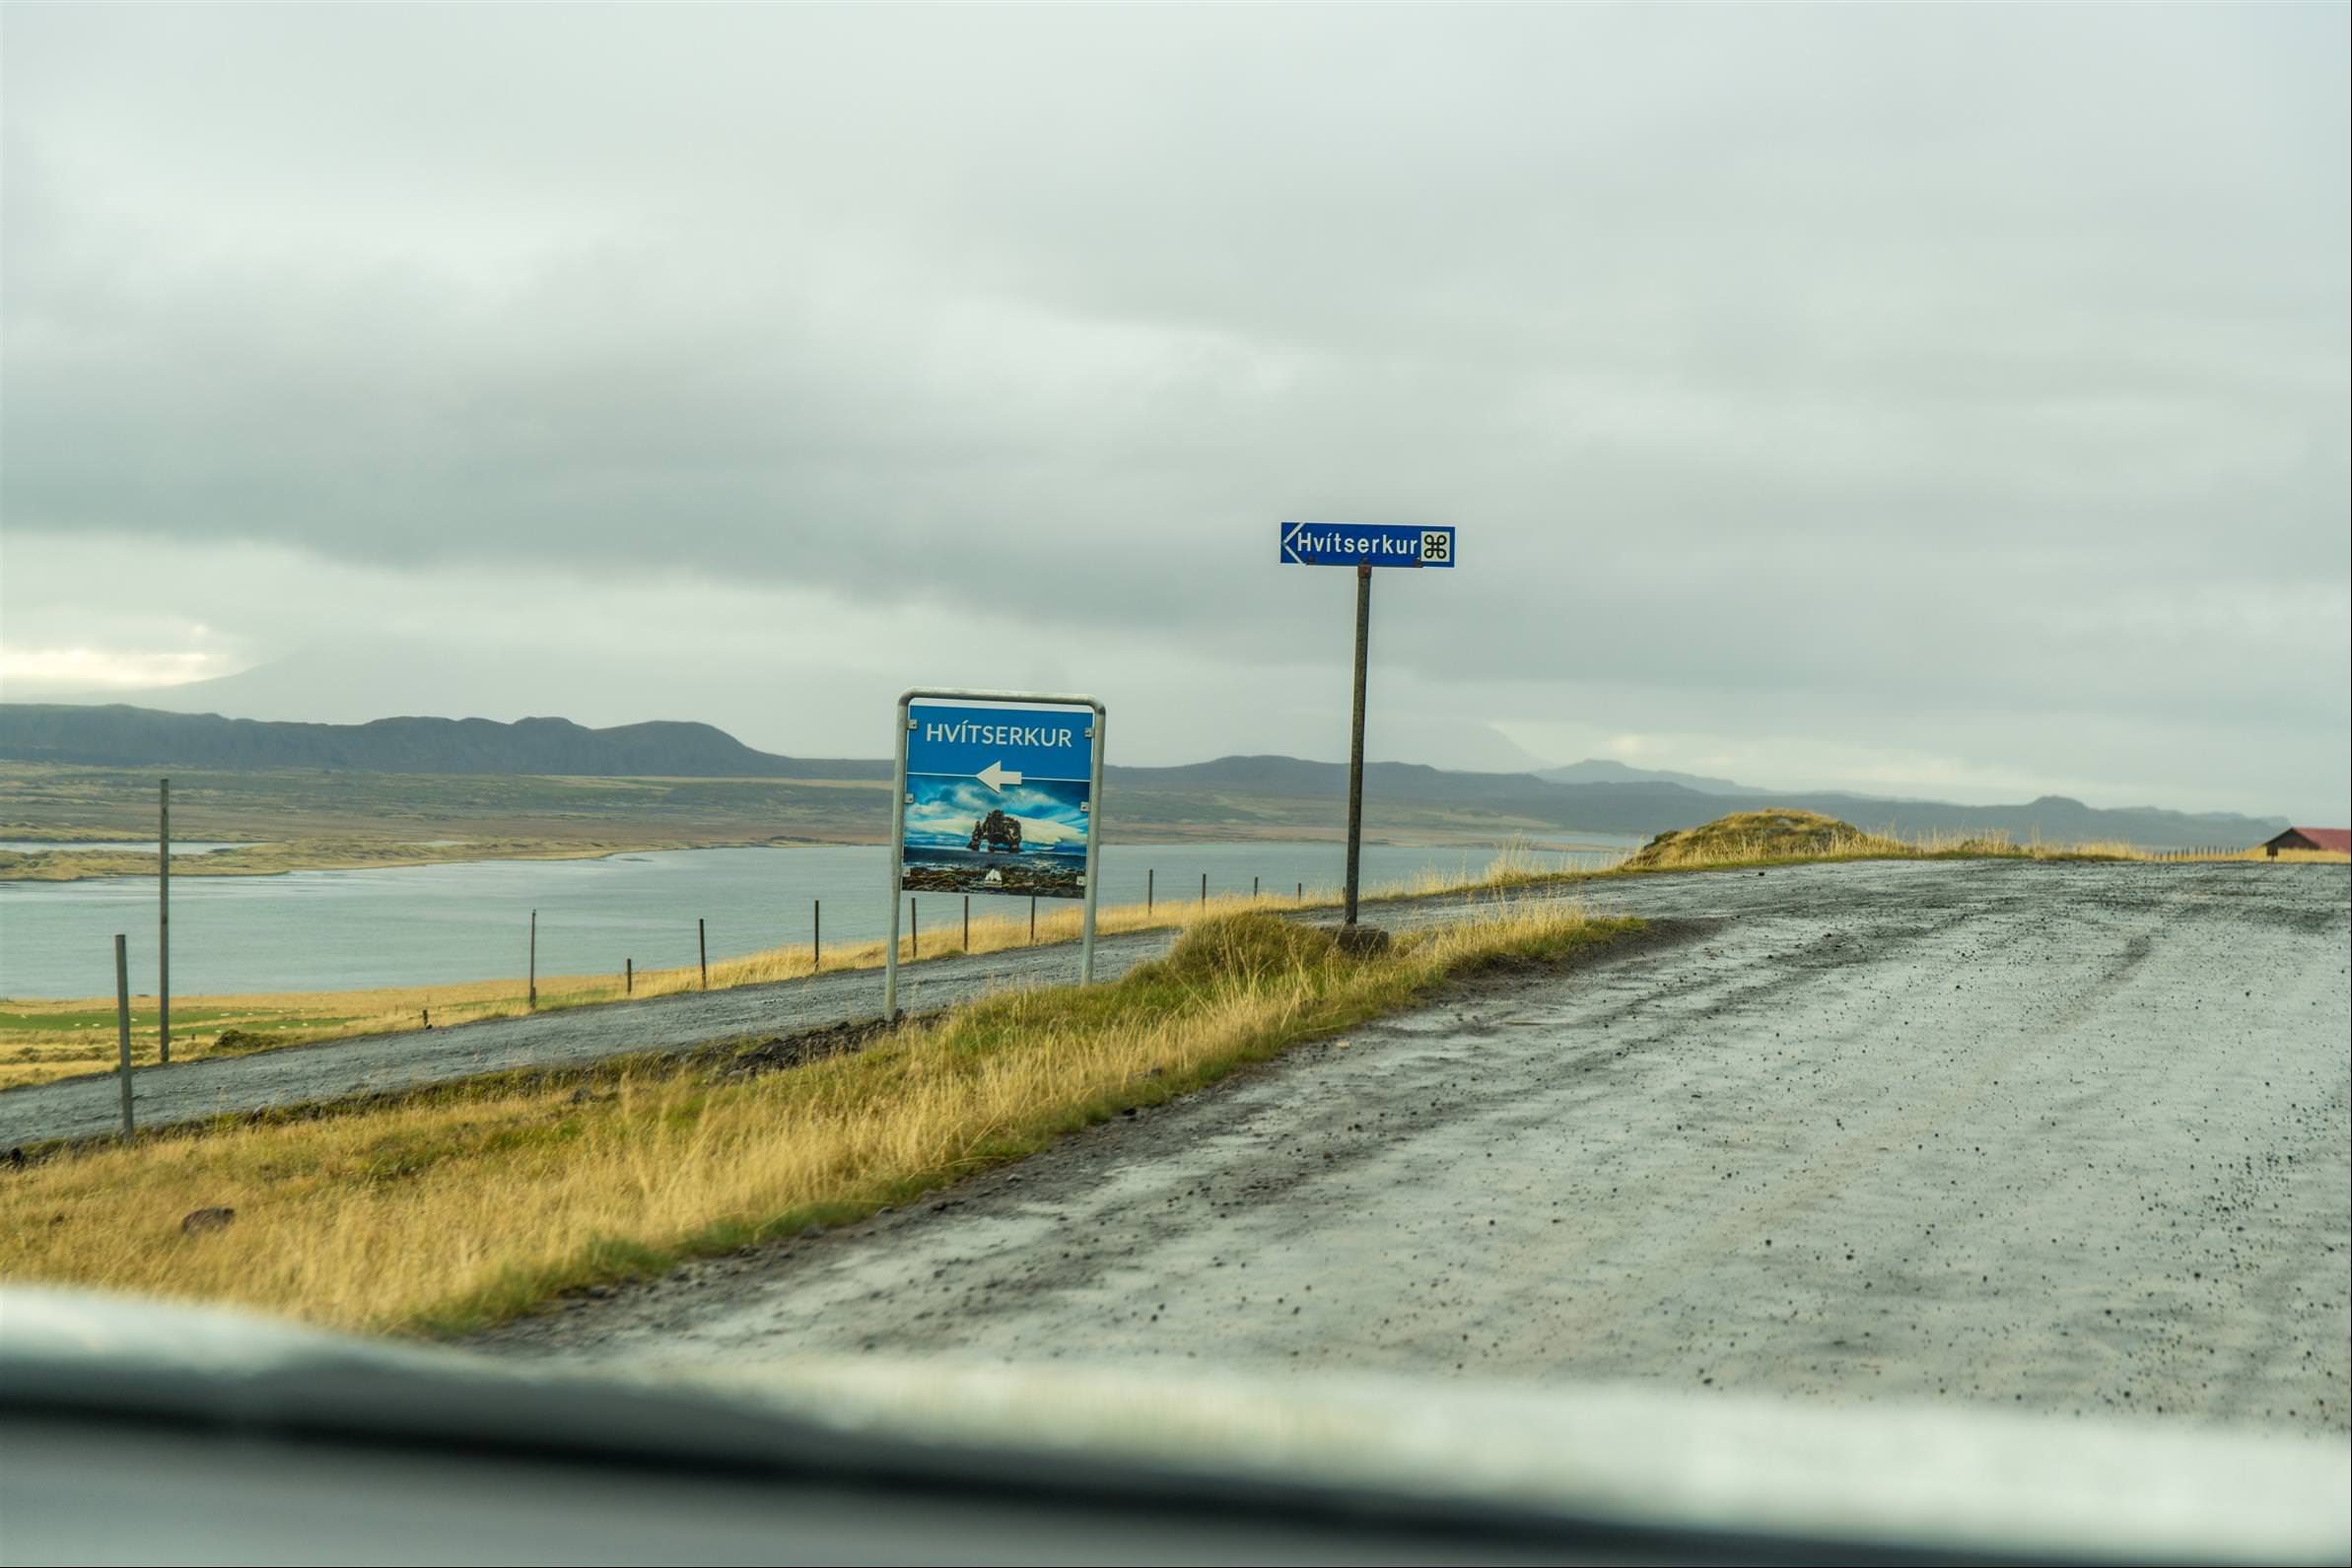 [冰島/北岸] 象石岩 Hvitserkur ，矗立在海中間的玄武岩，酷似頭低頭喝水大象